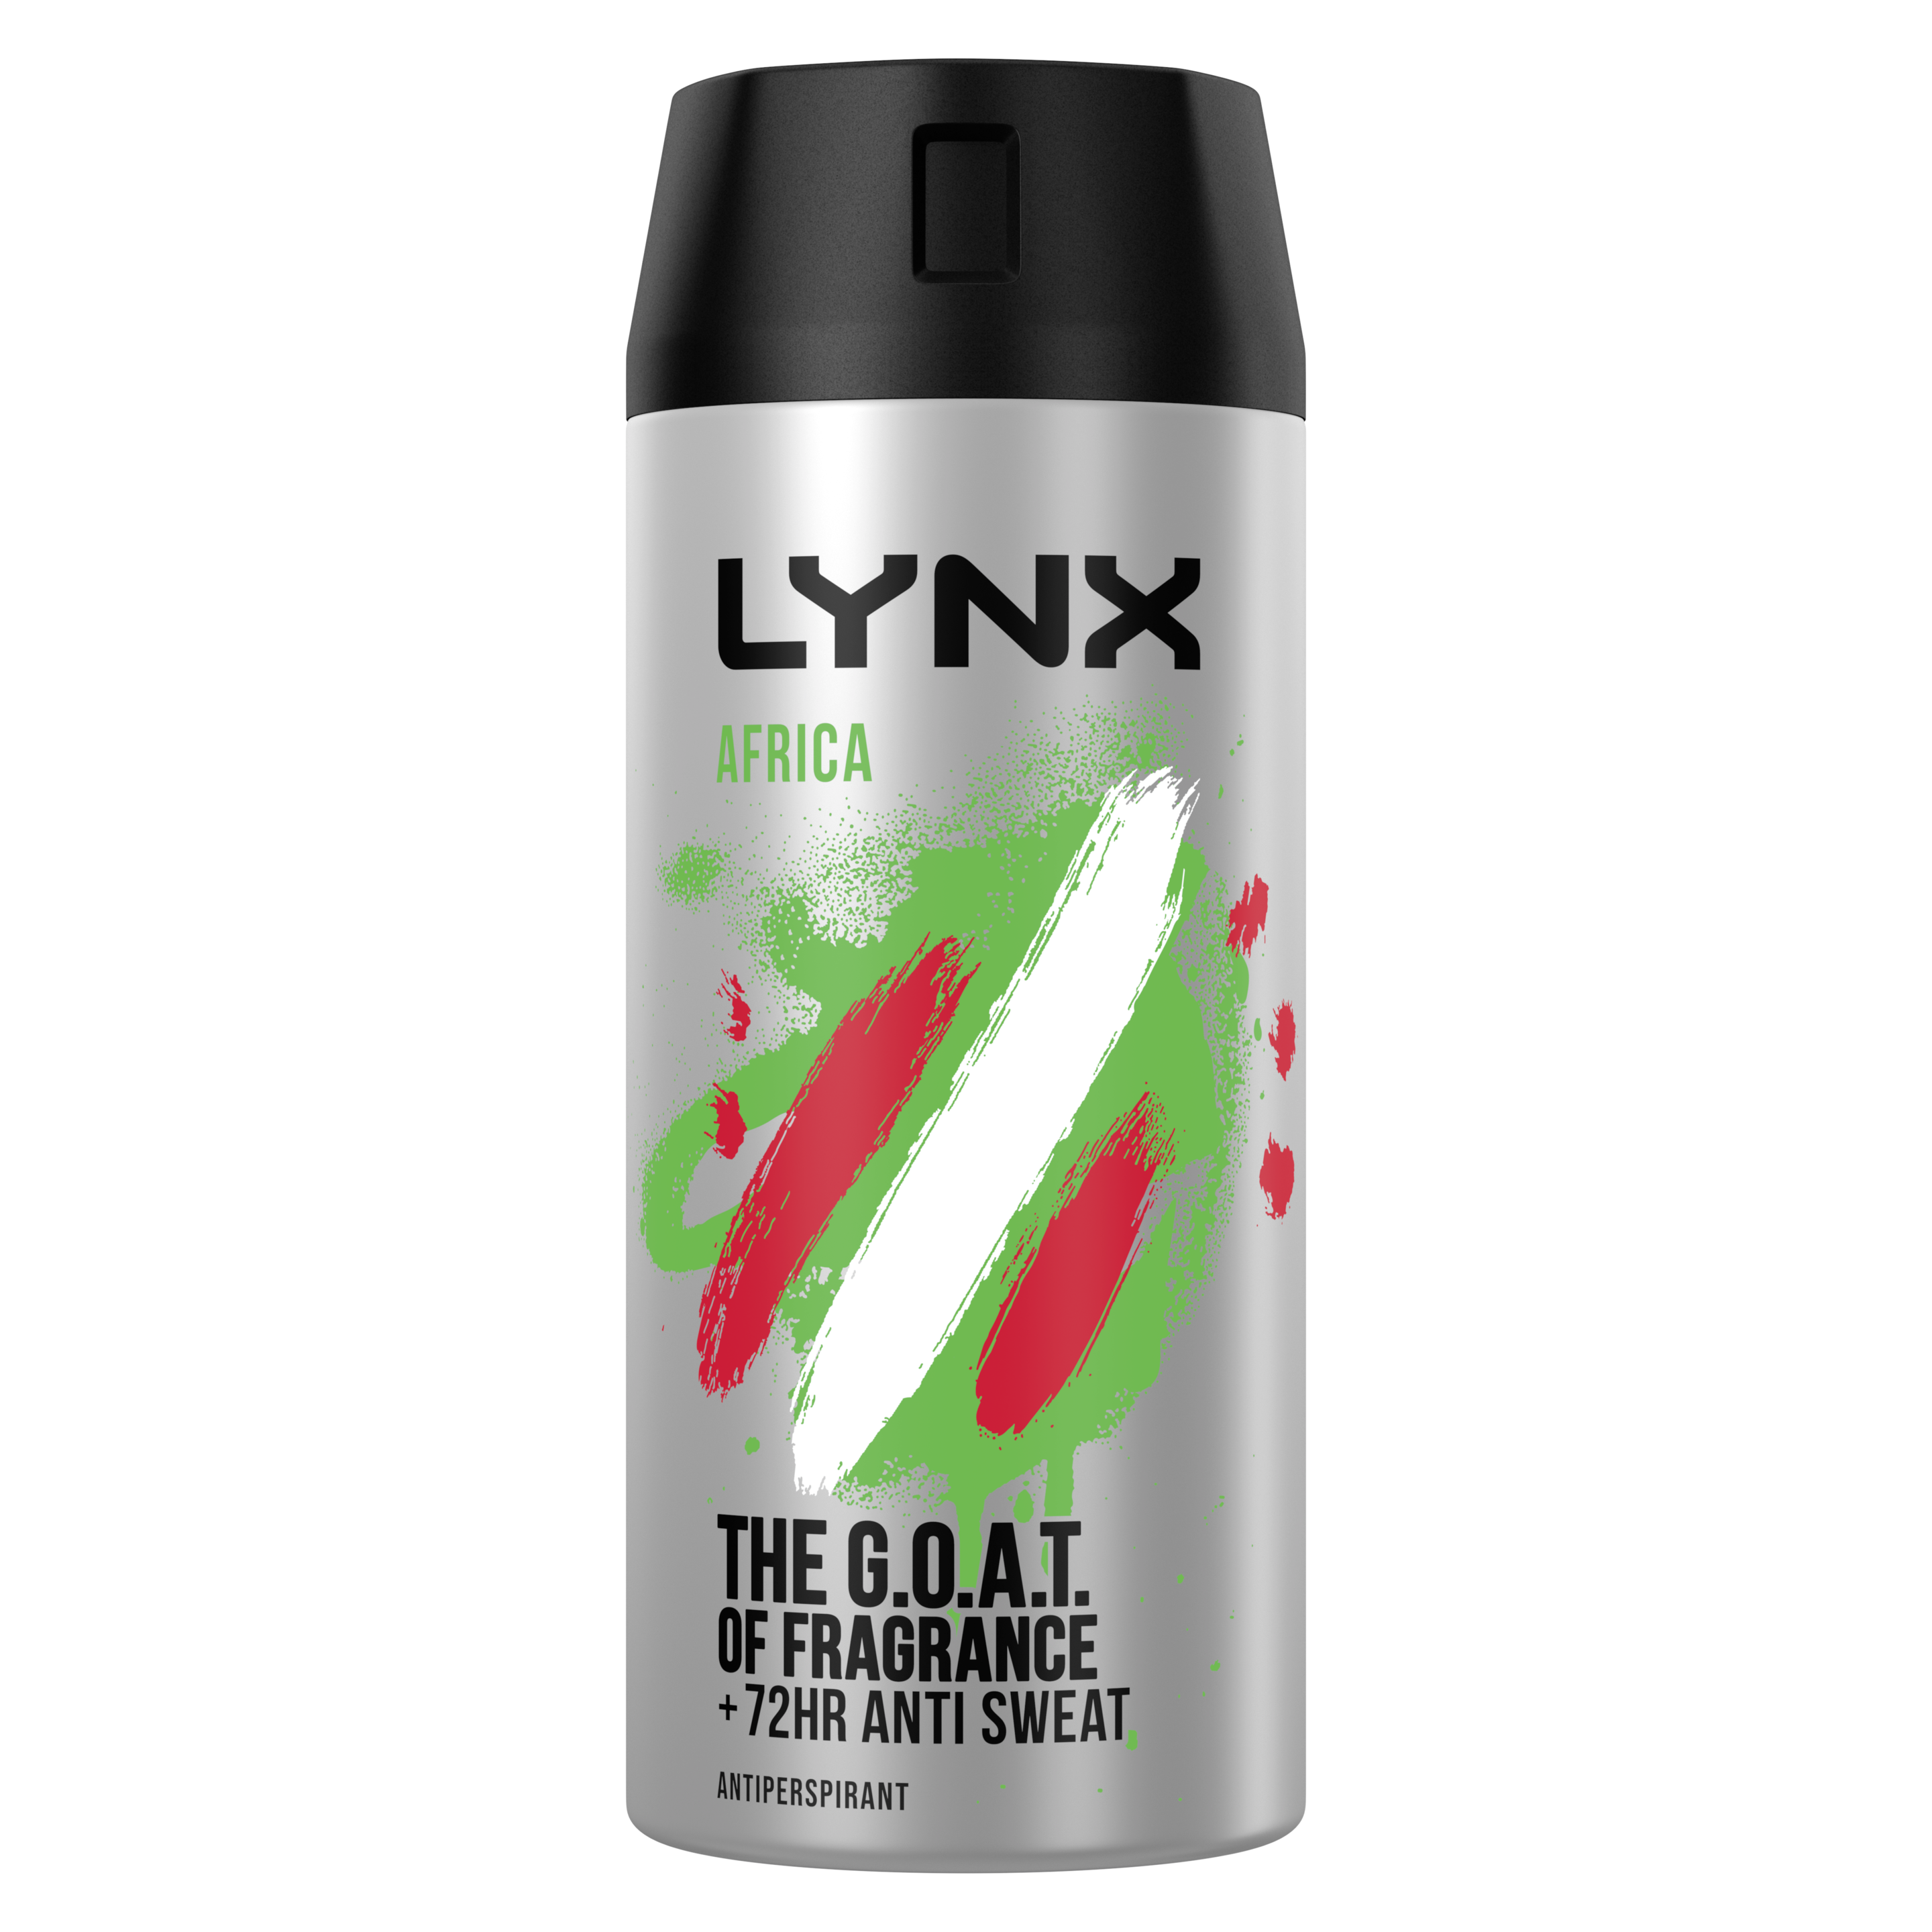 Lynx Africa Anti-Perspirant Deodorant Aerosol